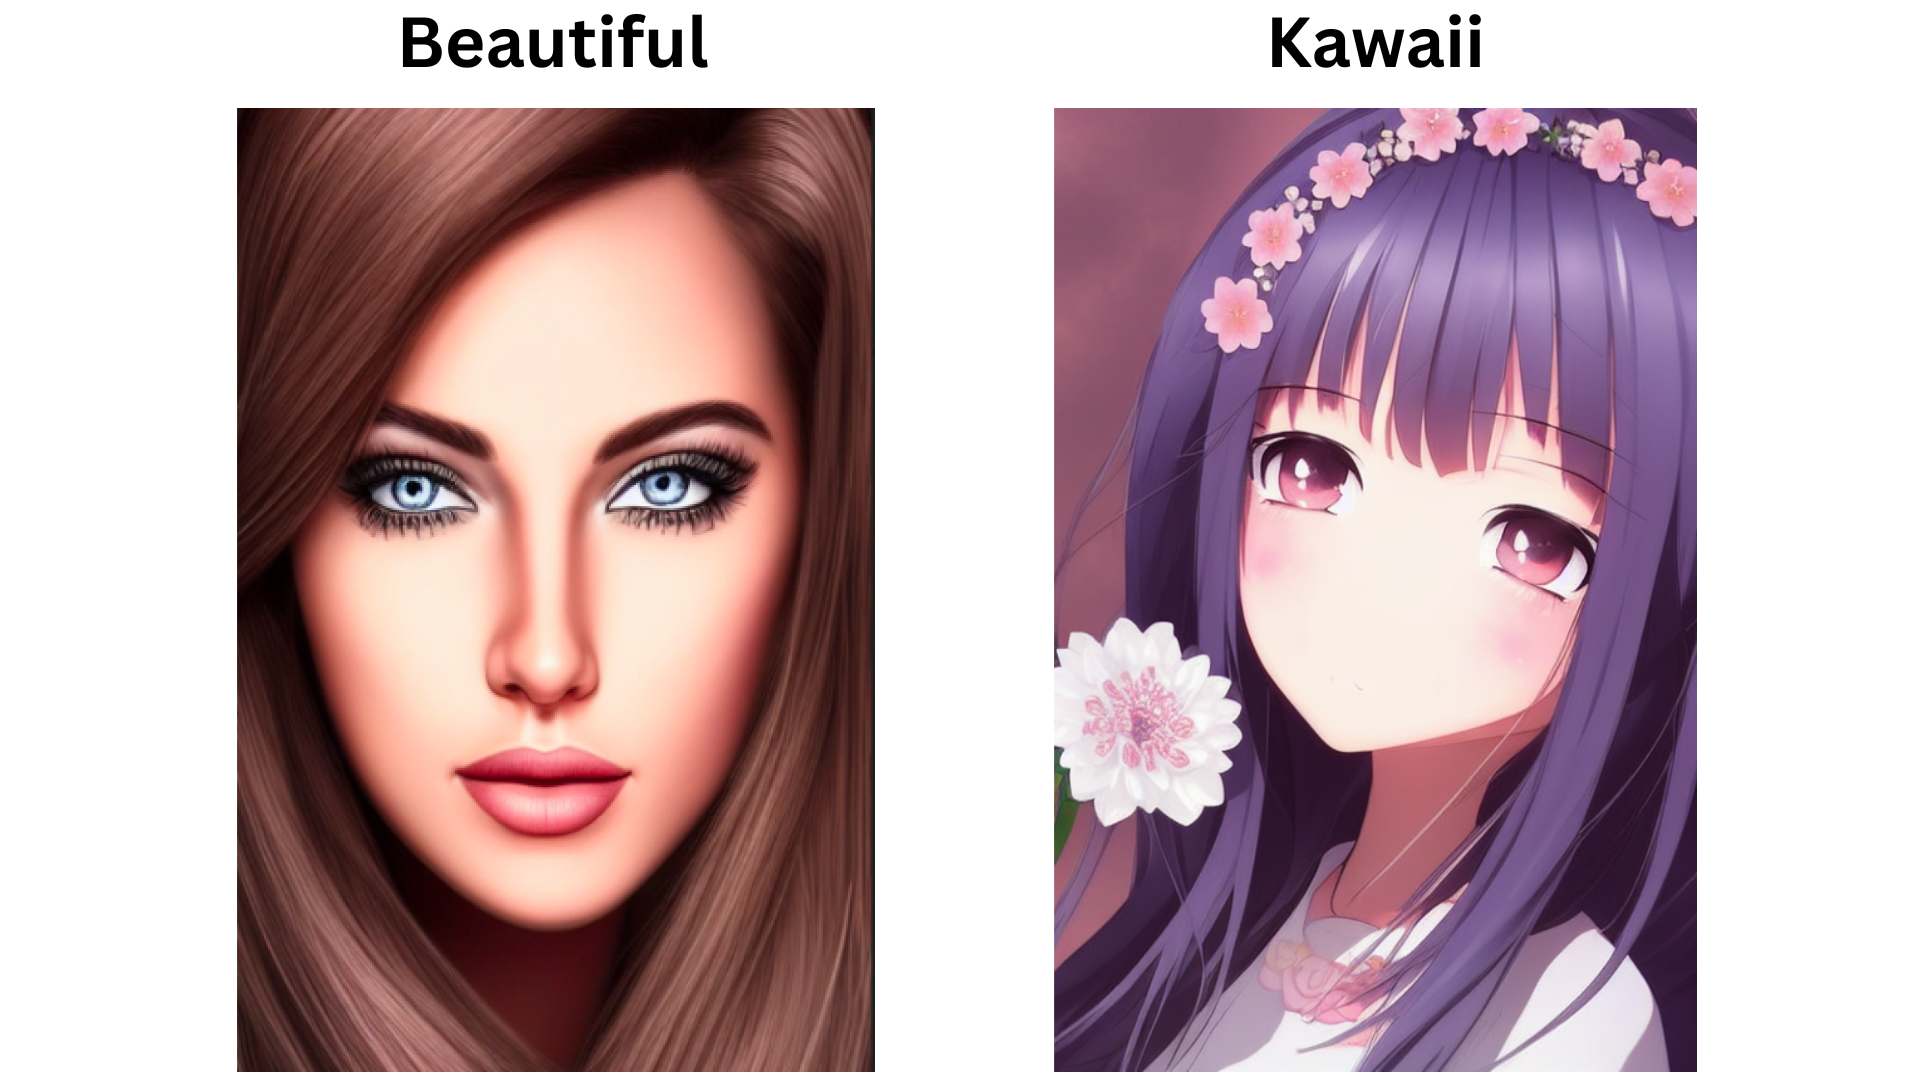 kawaii girl